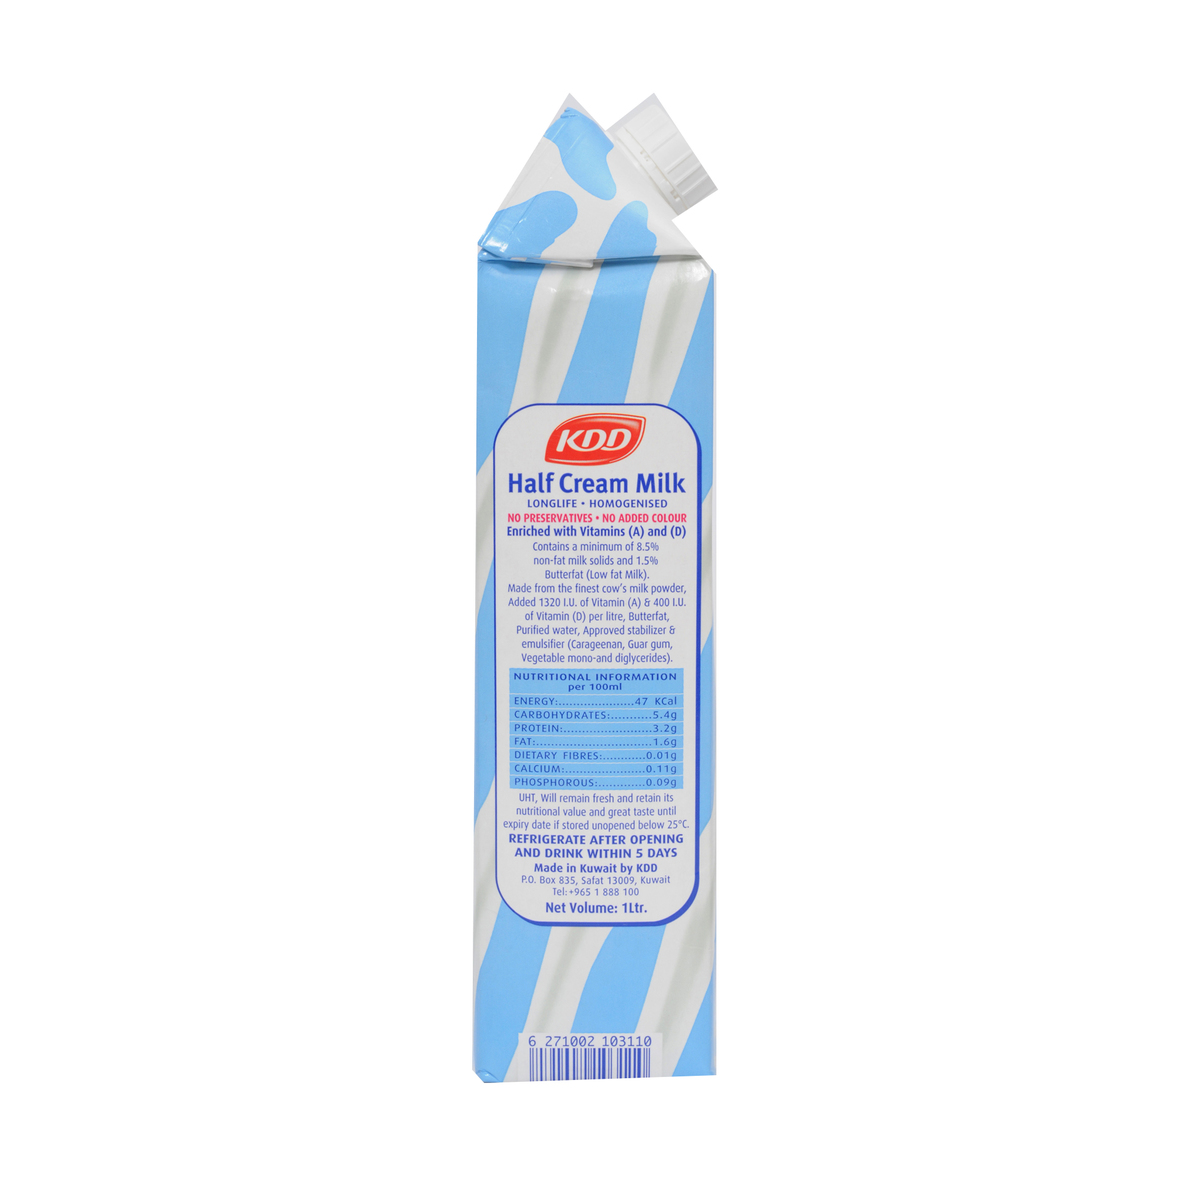 Buy Kdd Half Cream Milk Long Life 1litre Online Lulu Hypermarket Qatar